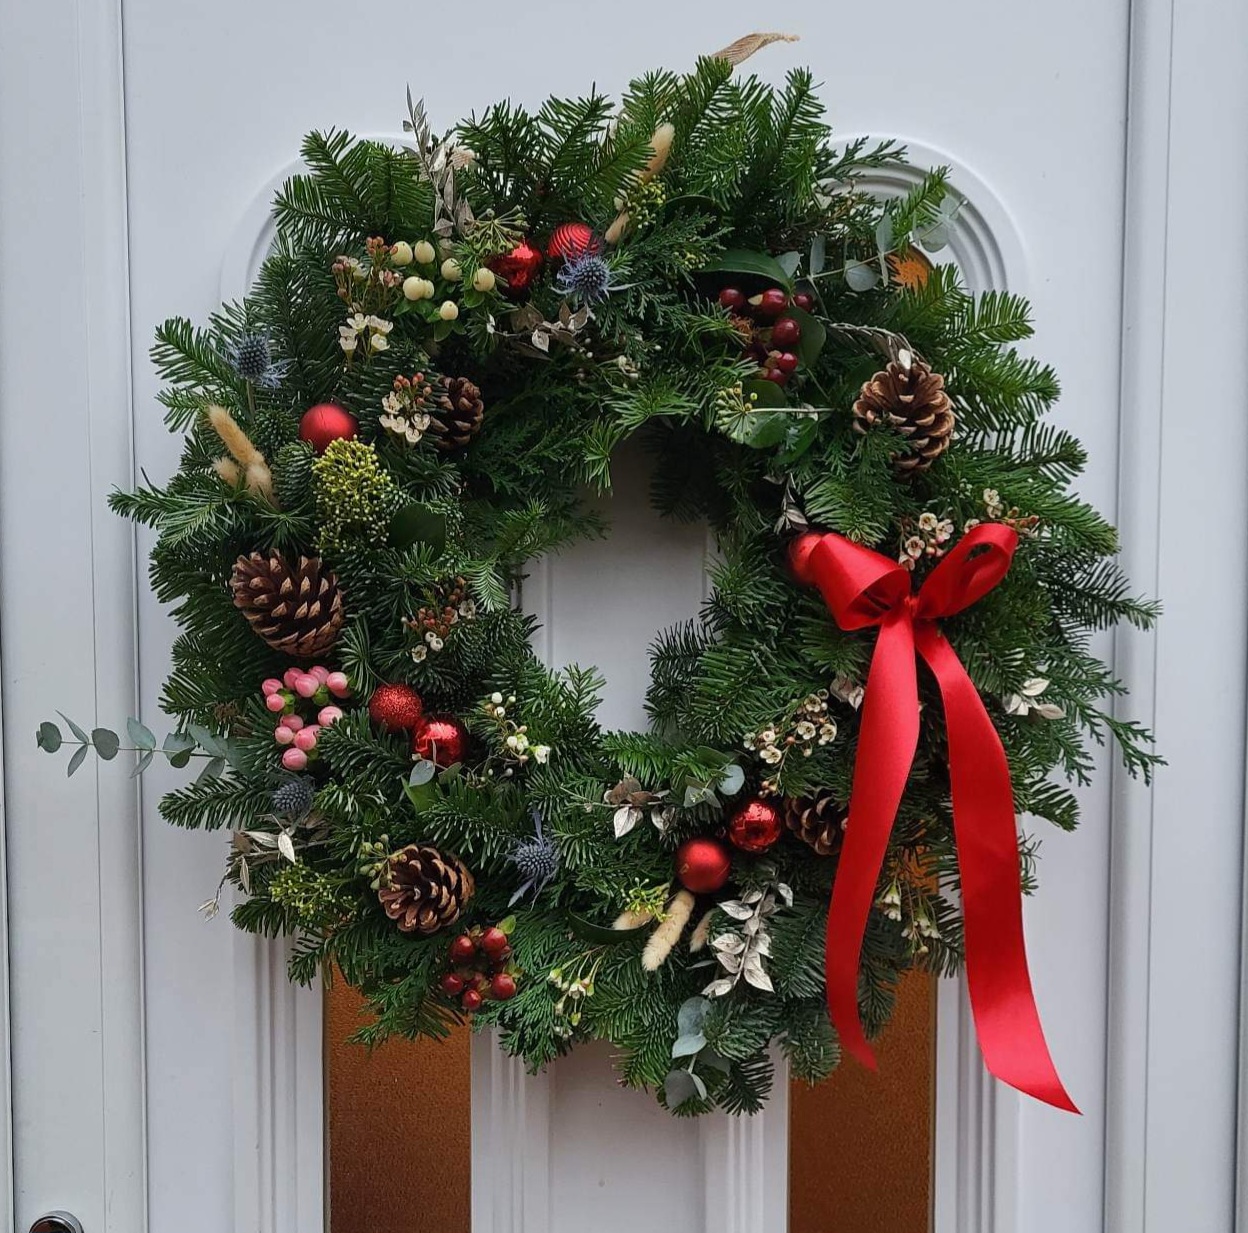 Christmas wreath on door